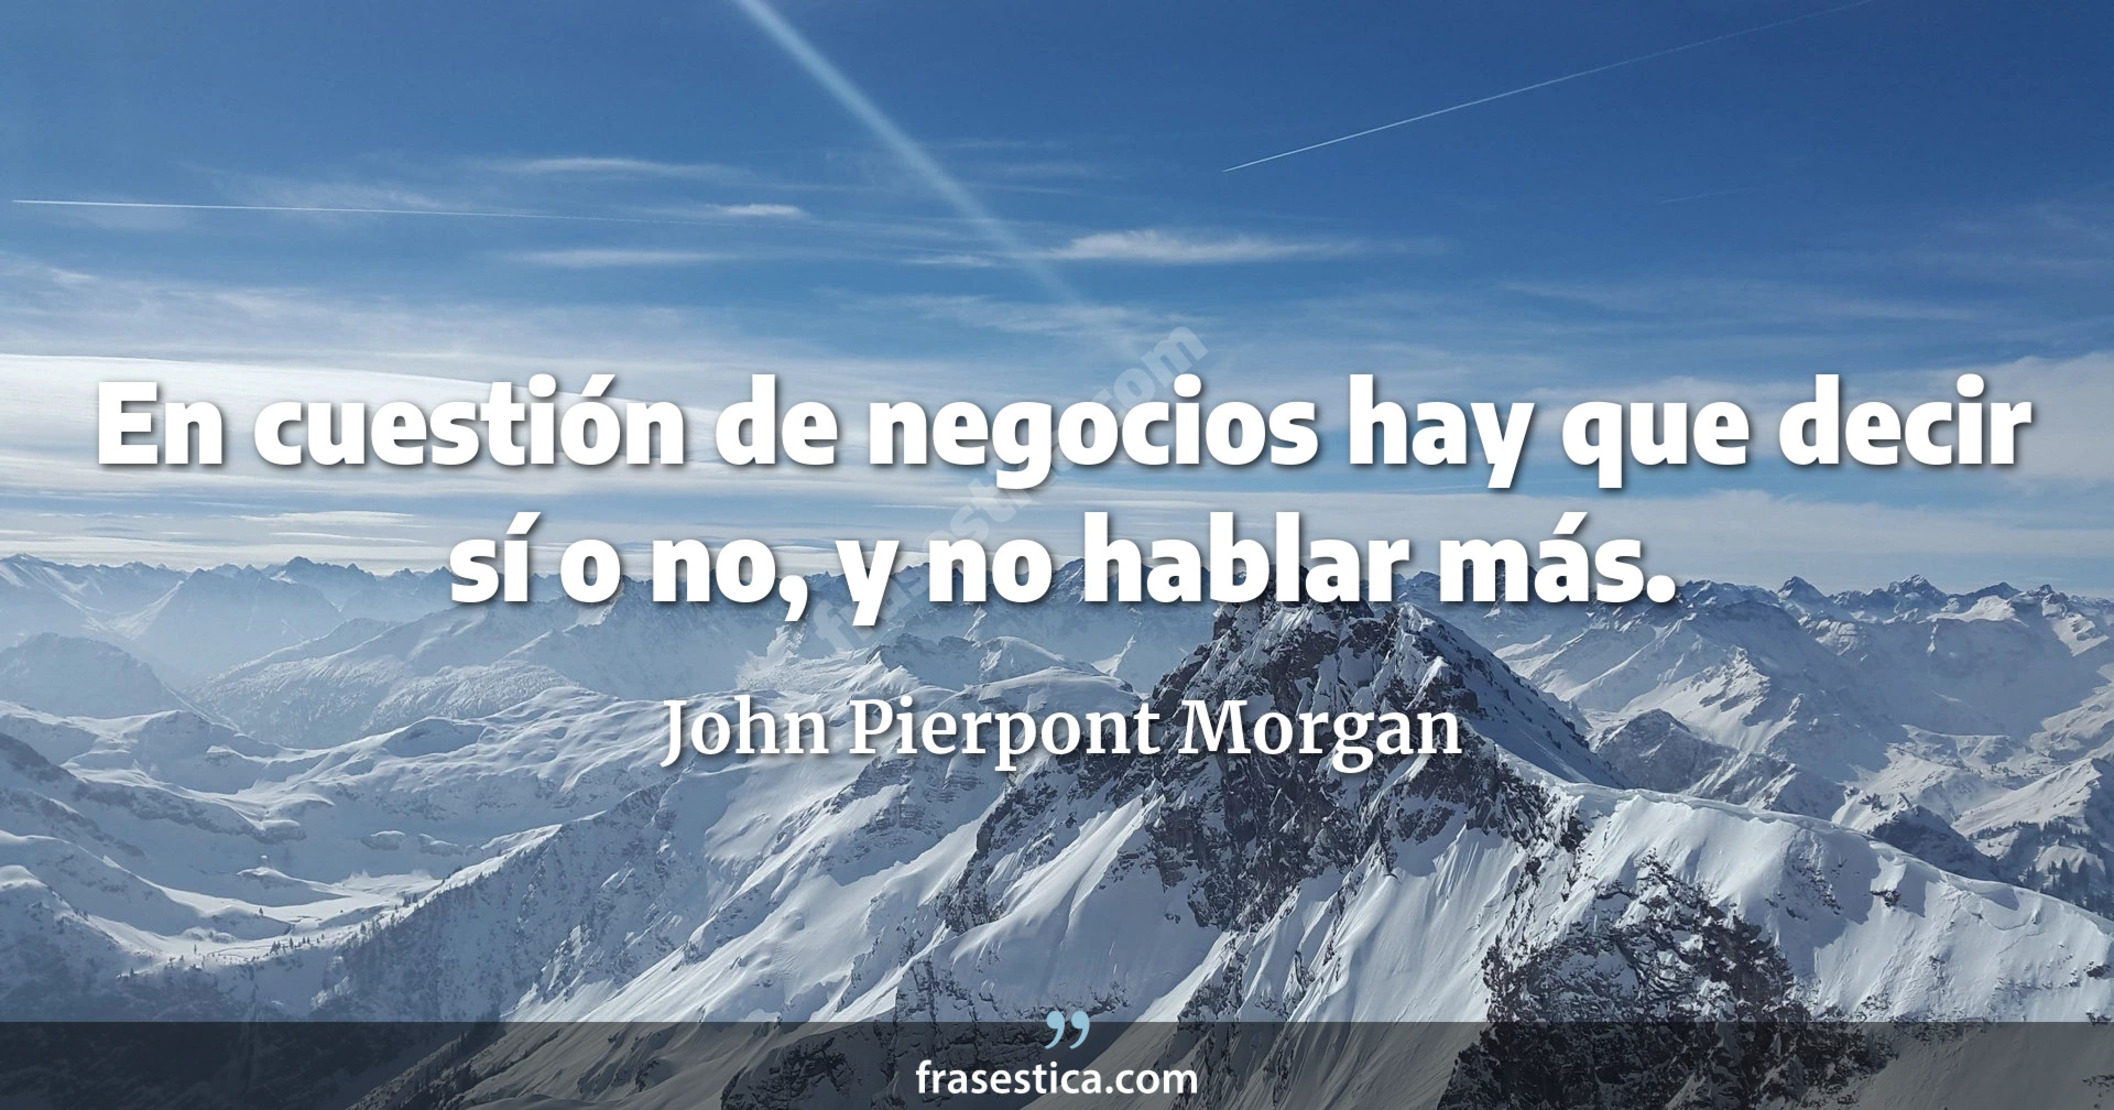 En cuestión de negocios hay que decir sí o no, y no hablar más. - John Pierpont Morgan